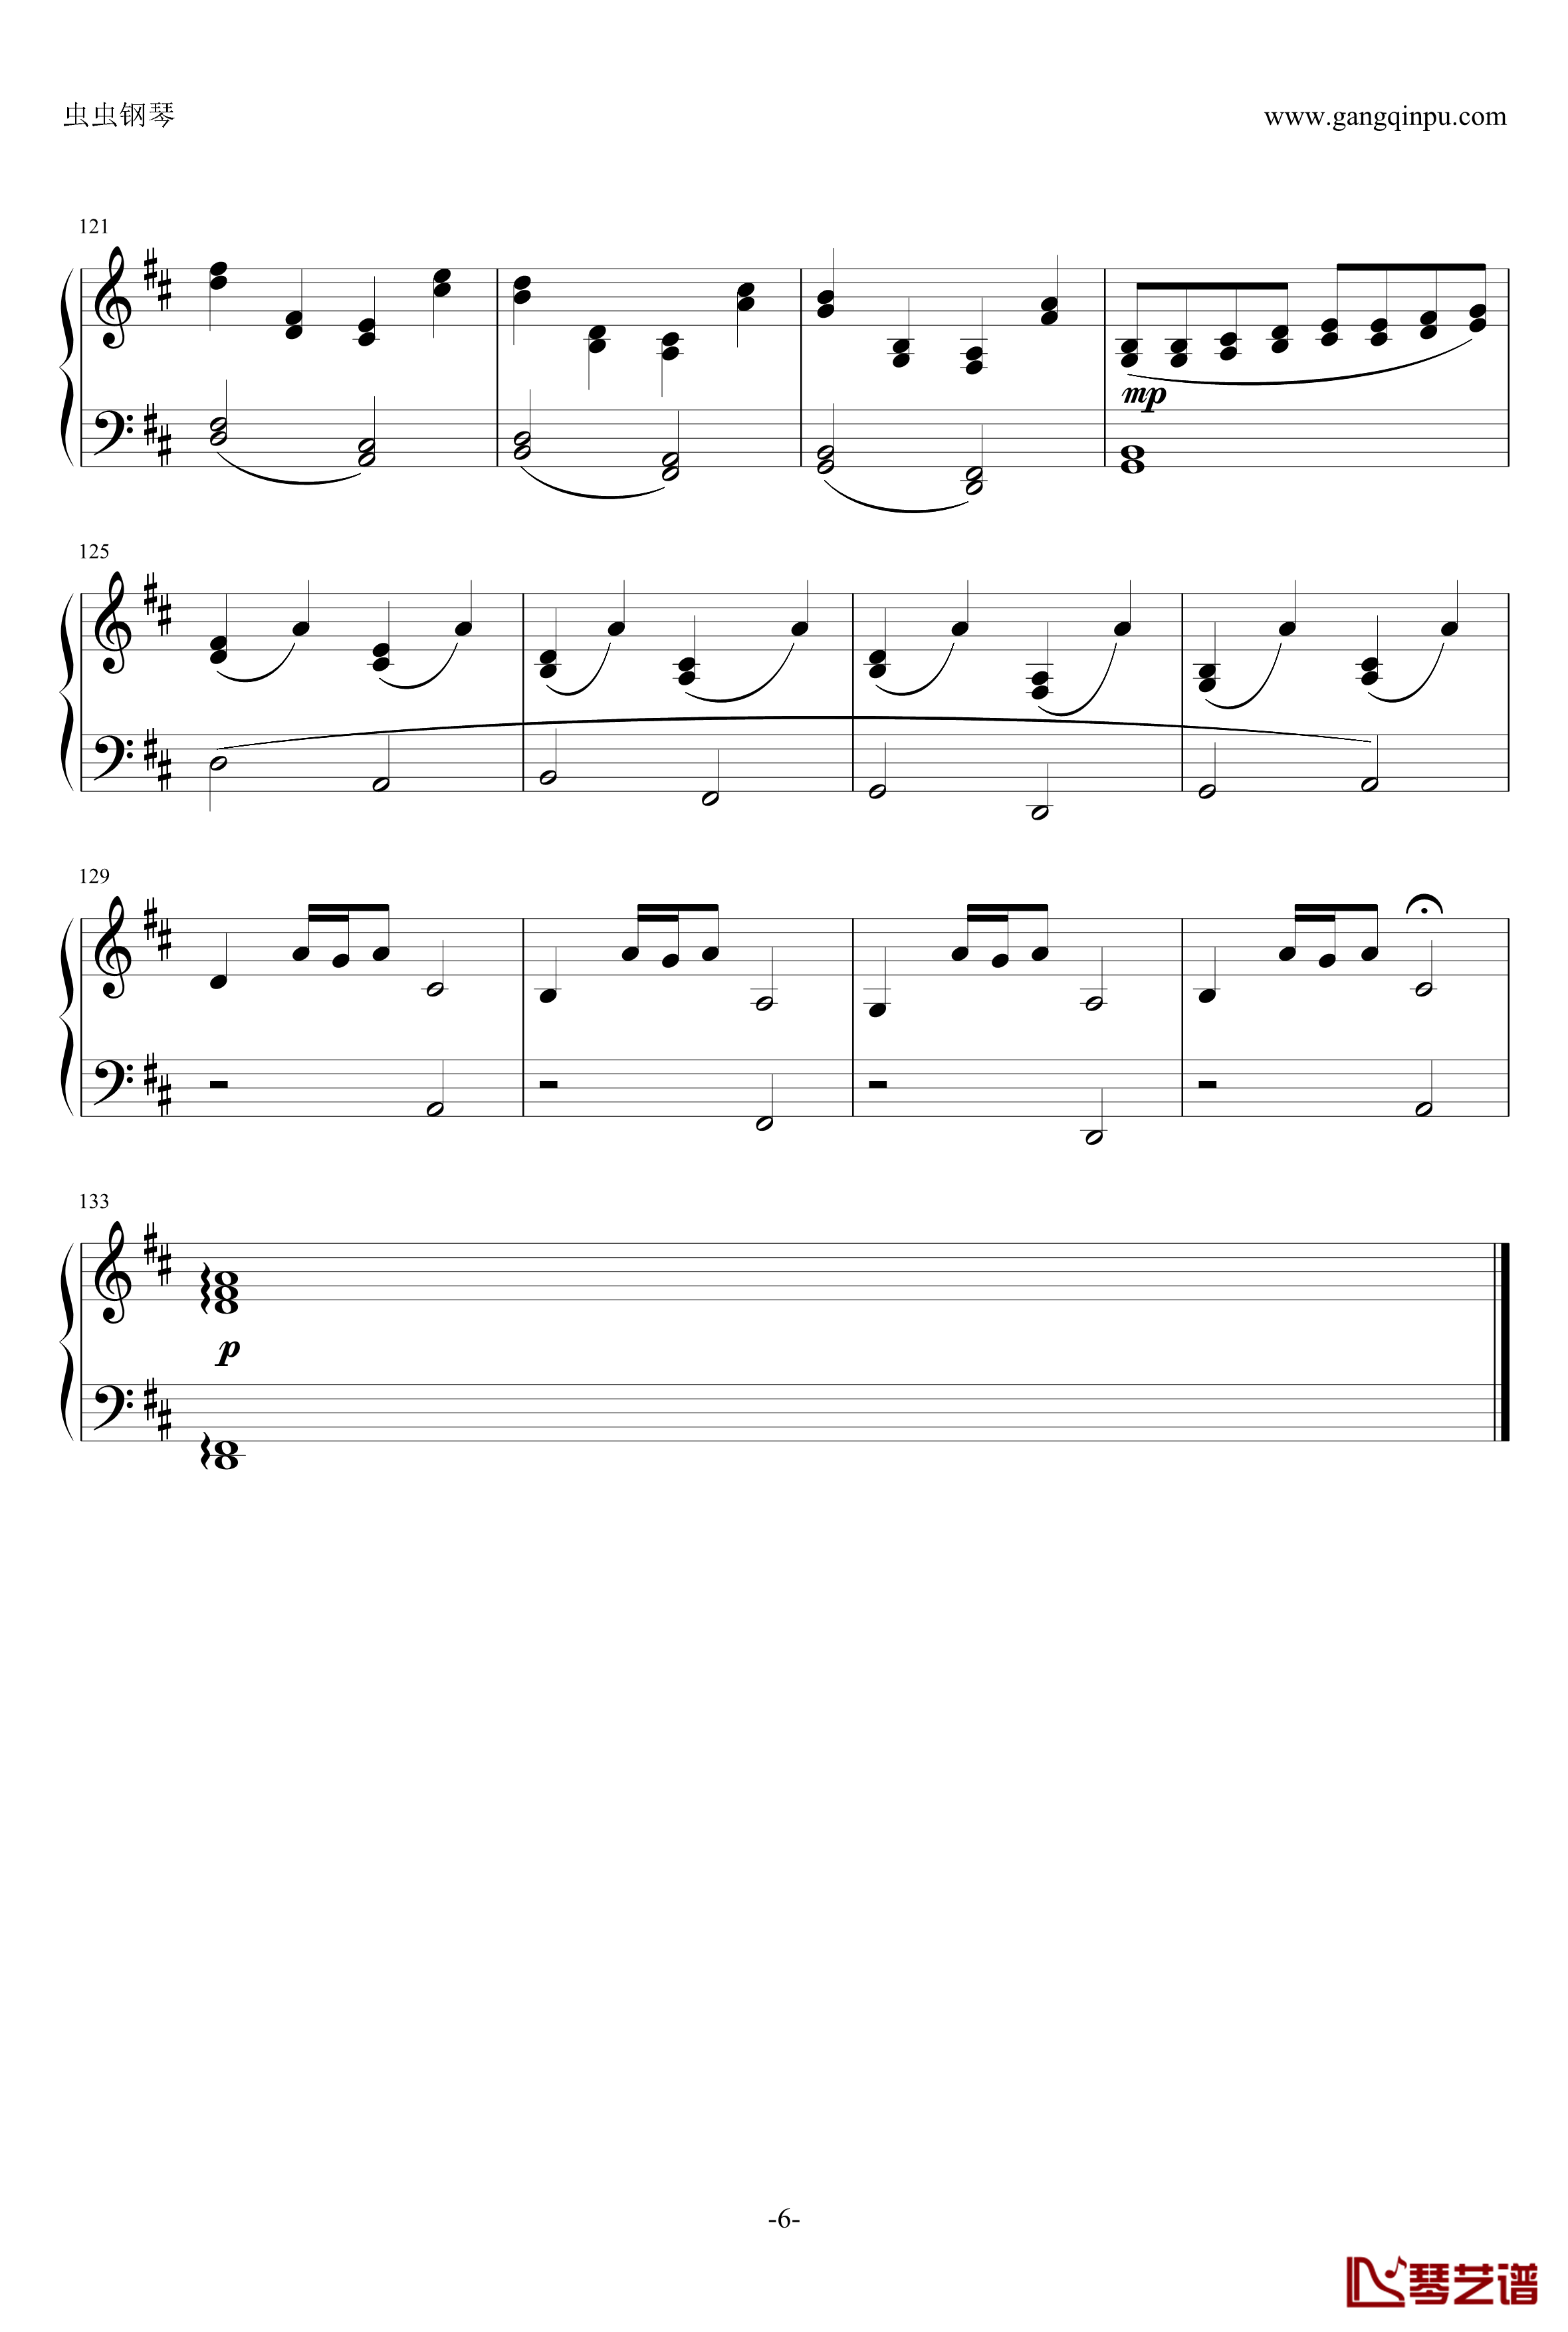 帕赫贝尔钢琴谱-Pacheble's Canon in D Long Version-Pachelbel6